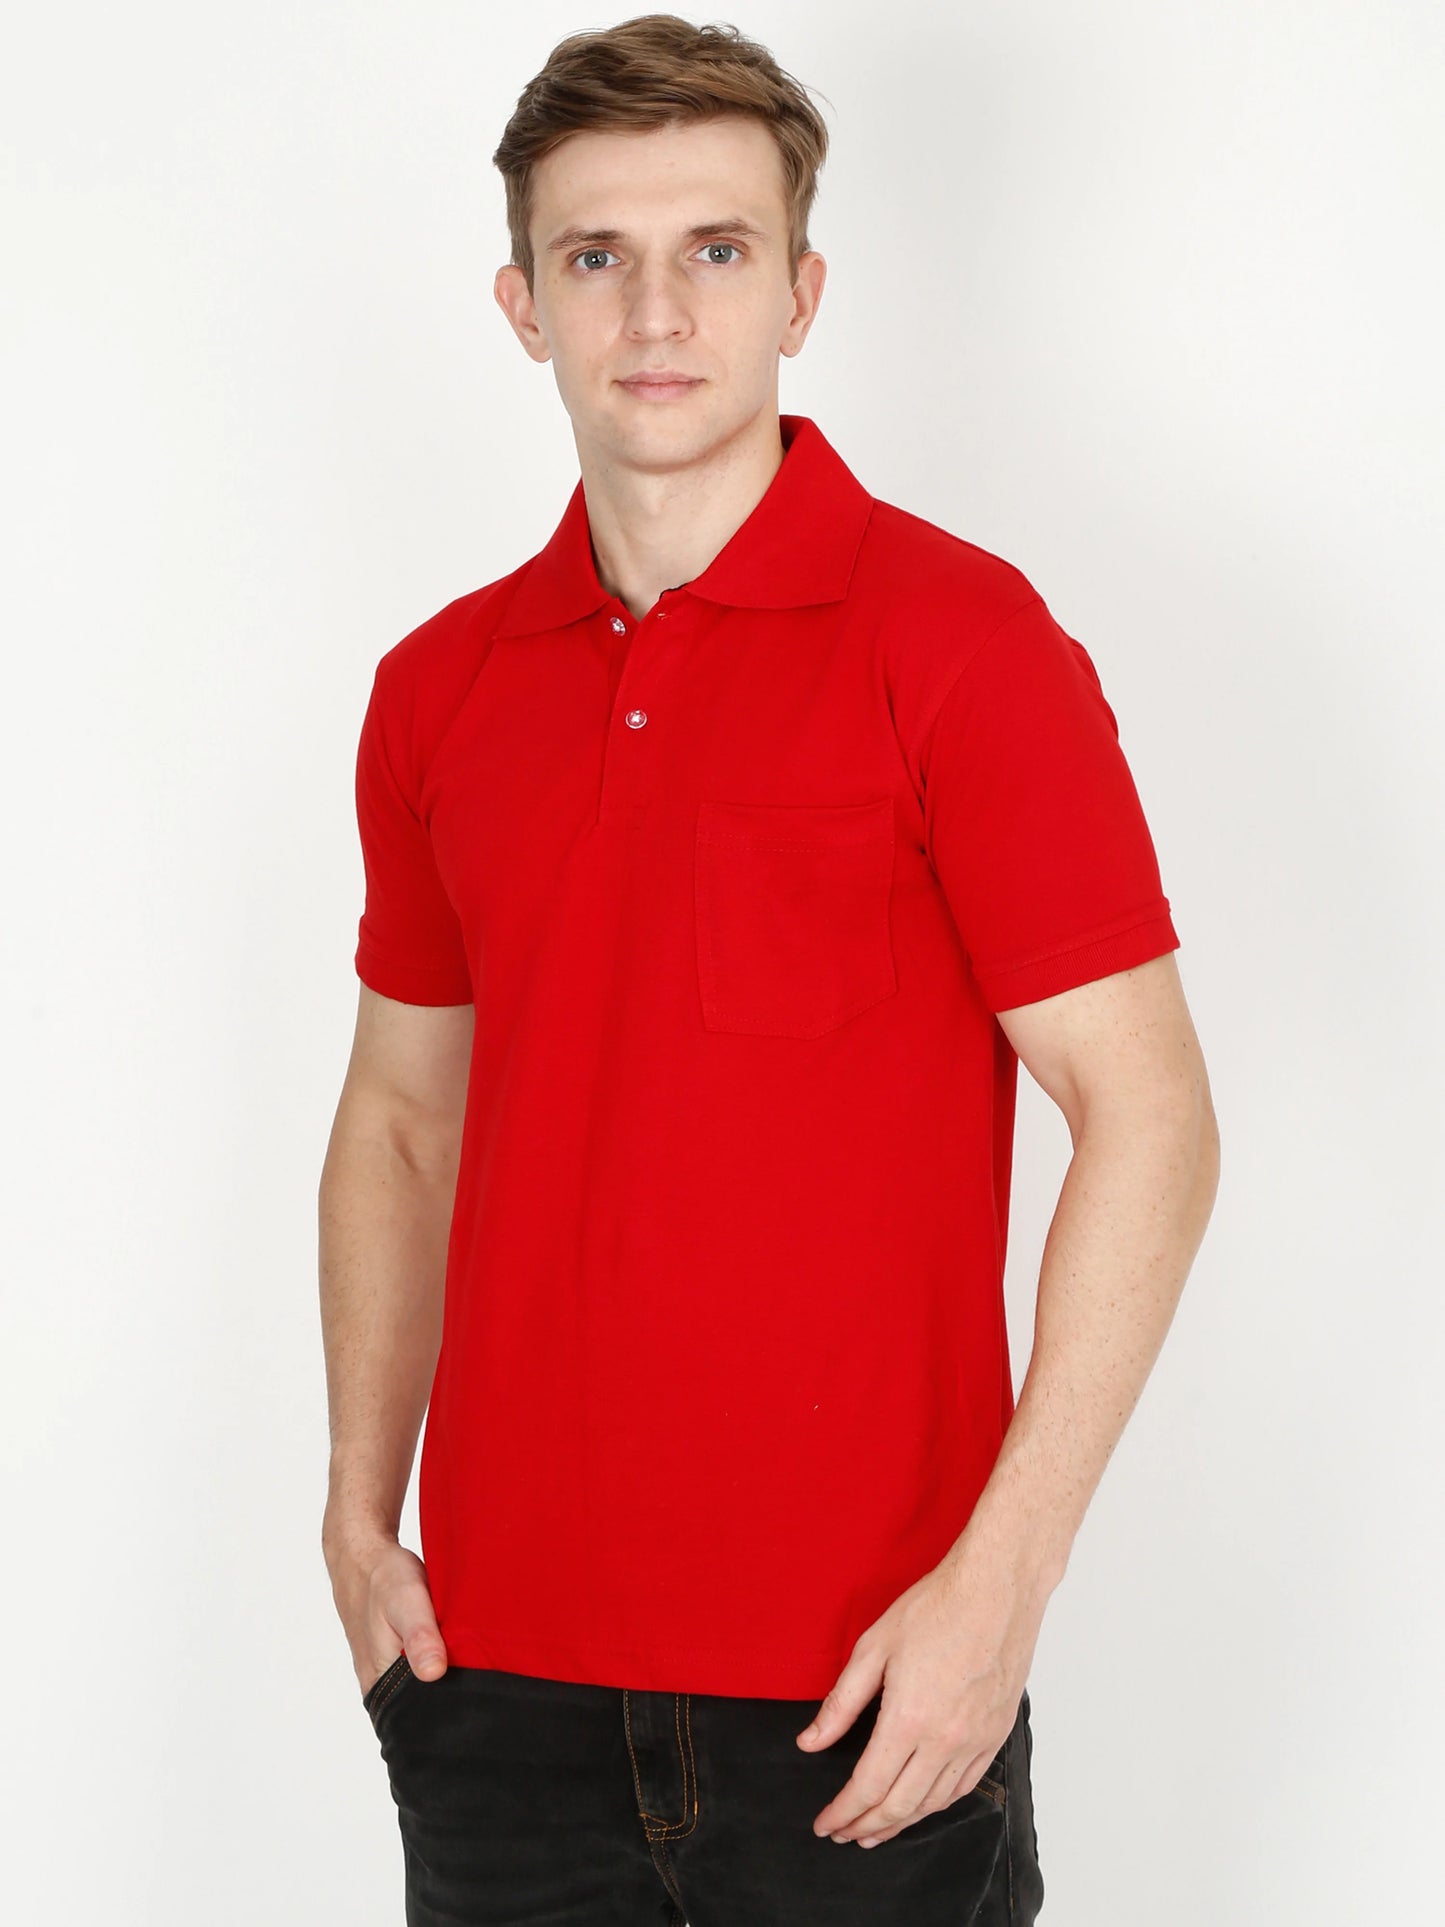 Men's Cotton Plain Polo Neck Half Sleeve Red Color T-Shirt